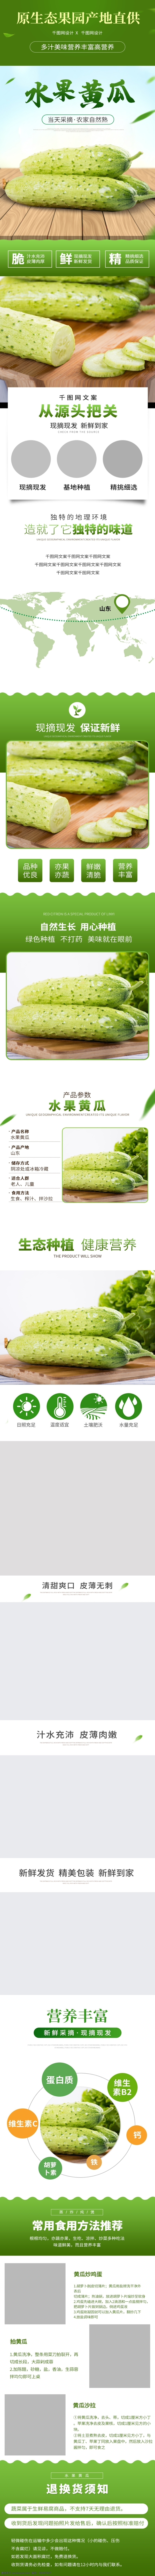 电商 小 清新 简约 风 绿色 黄瓜 蔬菜水果 详情 页 促销 食品 食品茶饮 蔬菜 蔬果 水果